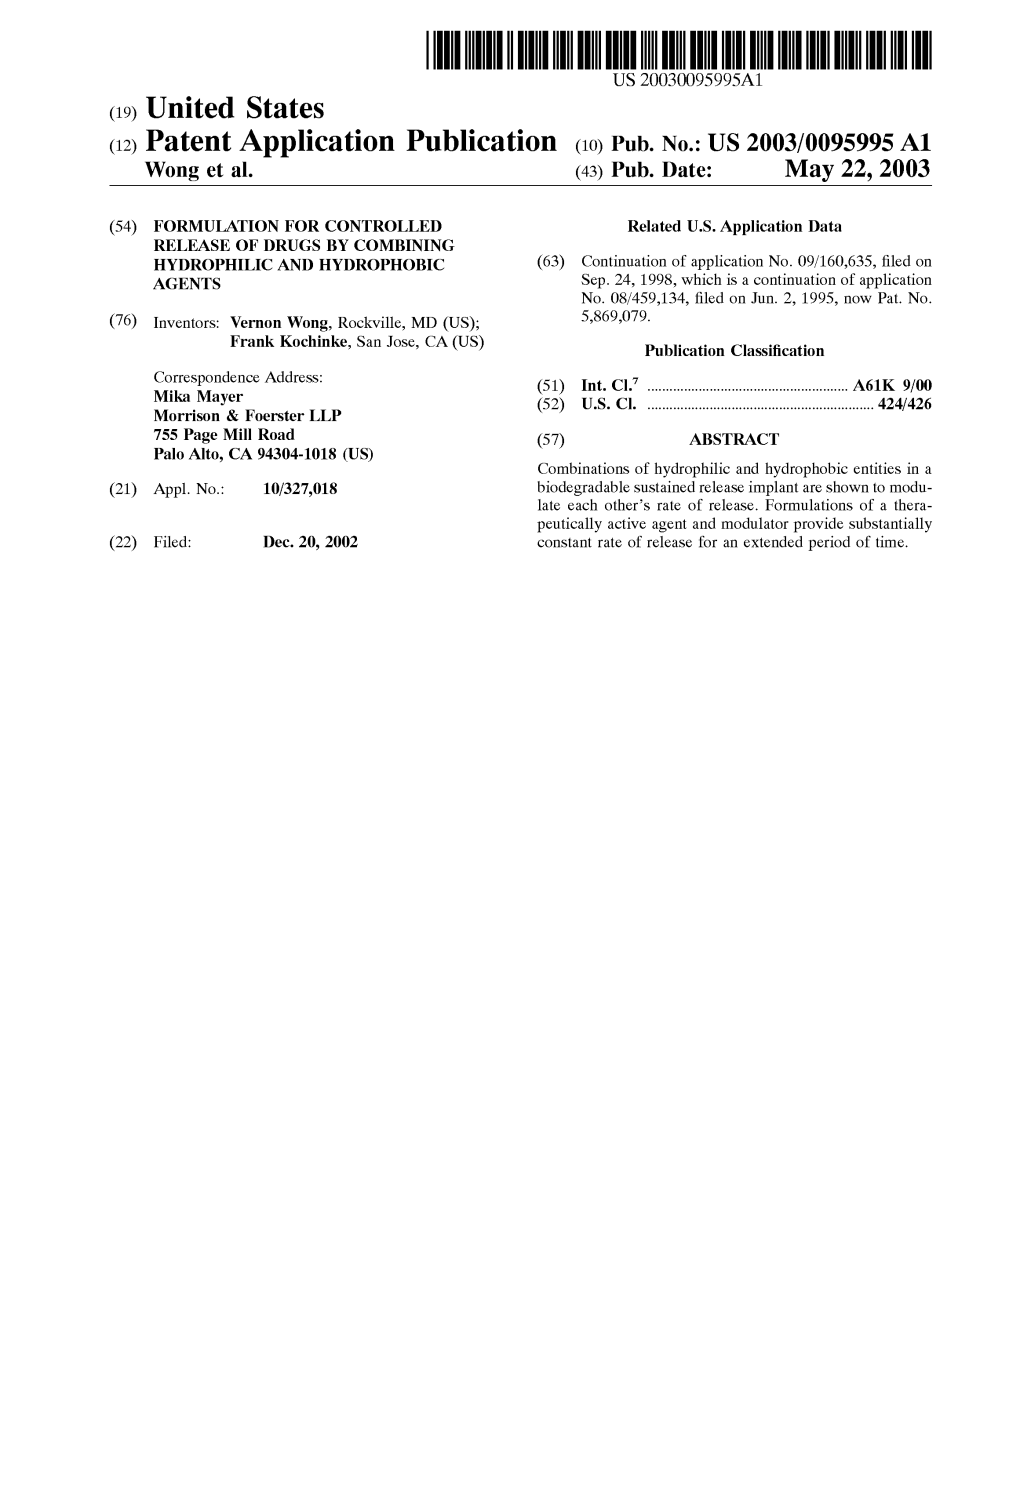 (12) Patent Application Publication (10) Pub. No.: US 2003/0095995 A1 Wong Et Al